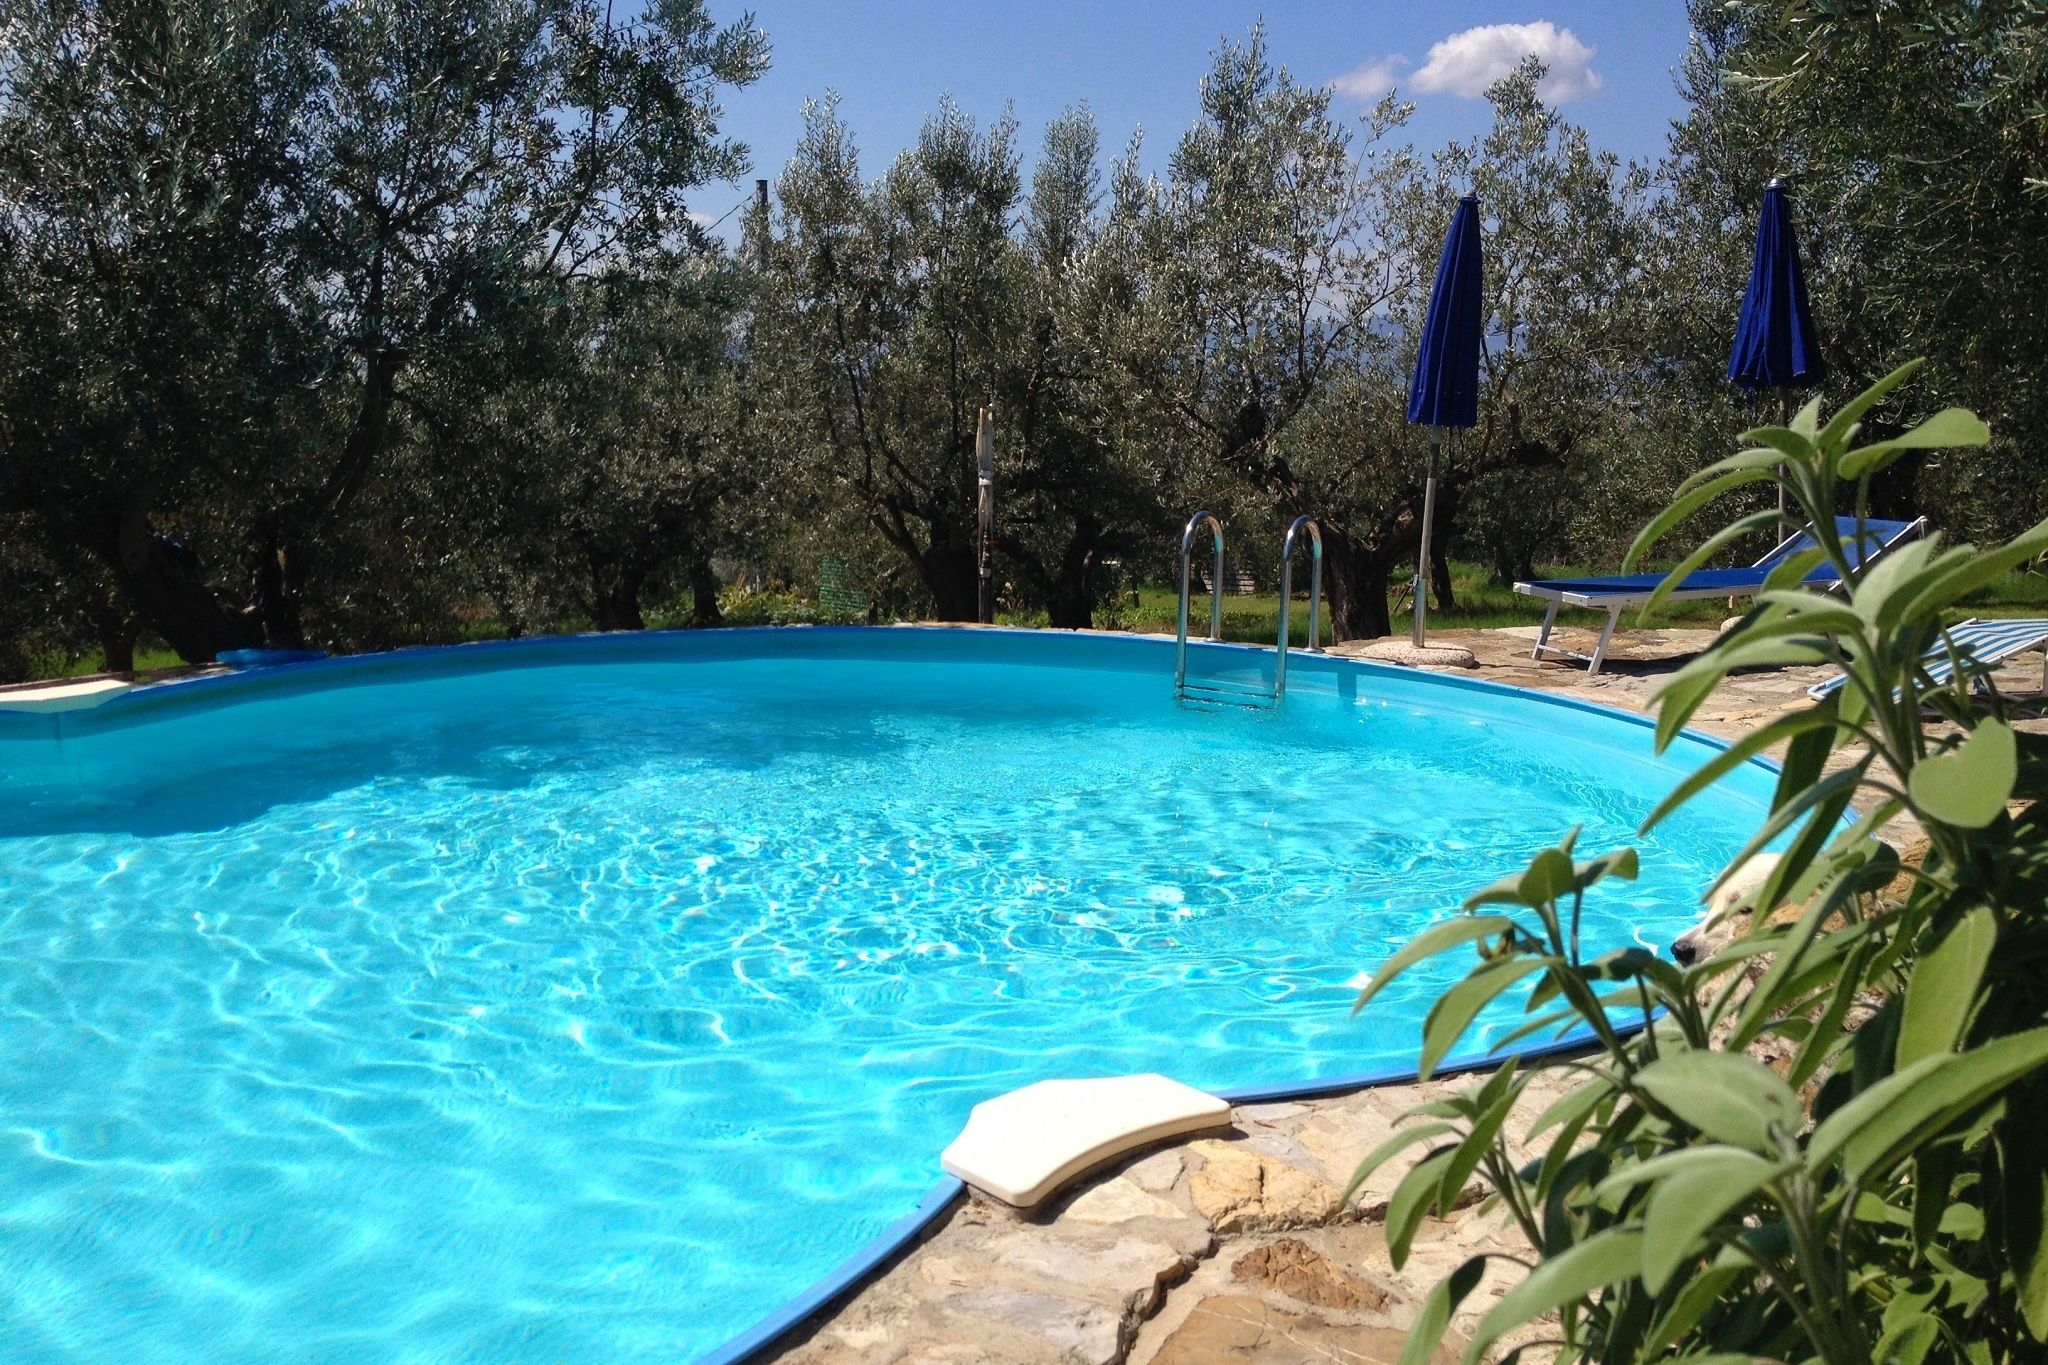 Agriturismo in natuurpark nabij Florence met prachtig zwembad tussen olijfbomen